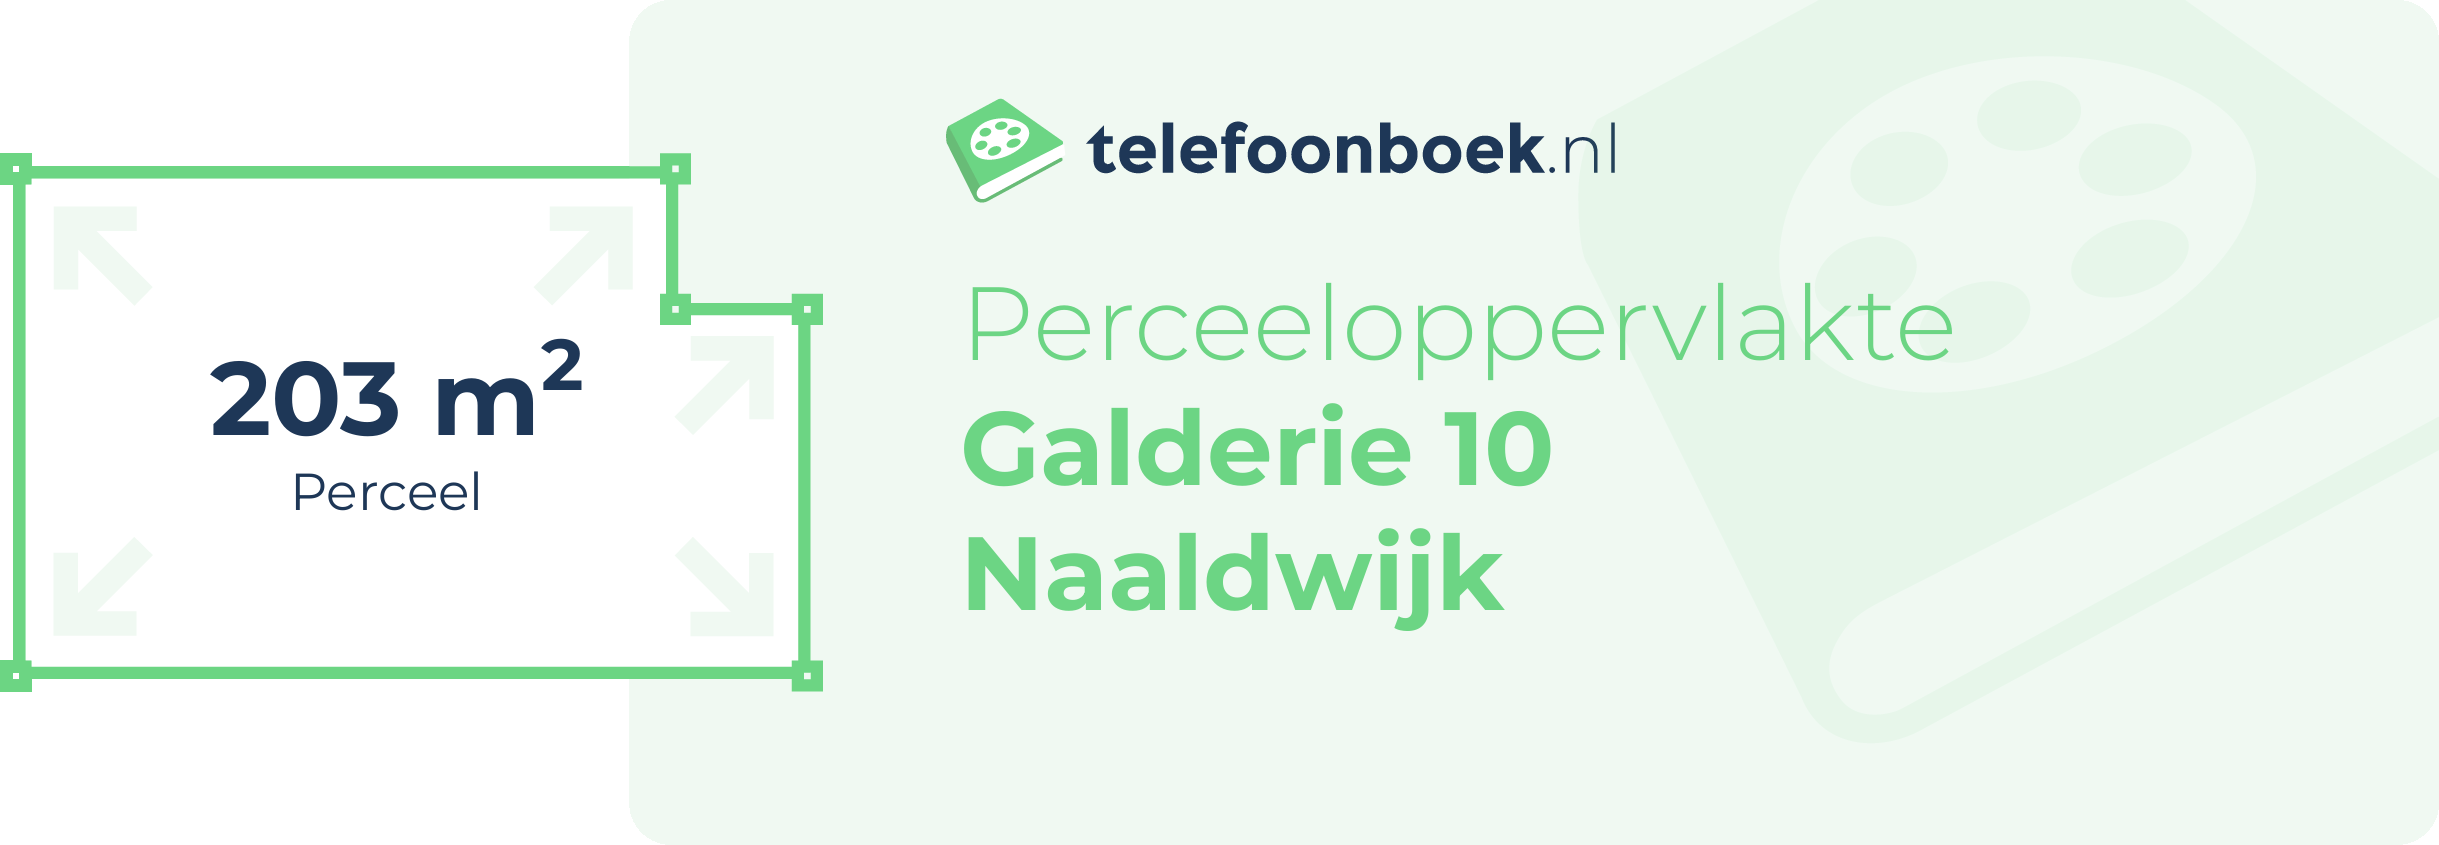 Perceeloppervlakte Galderie 10 Naaldwijk